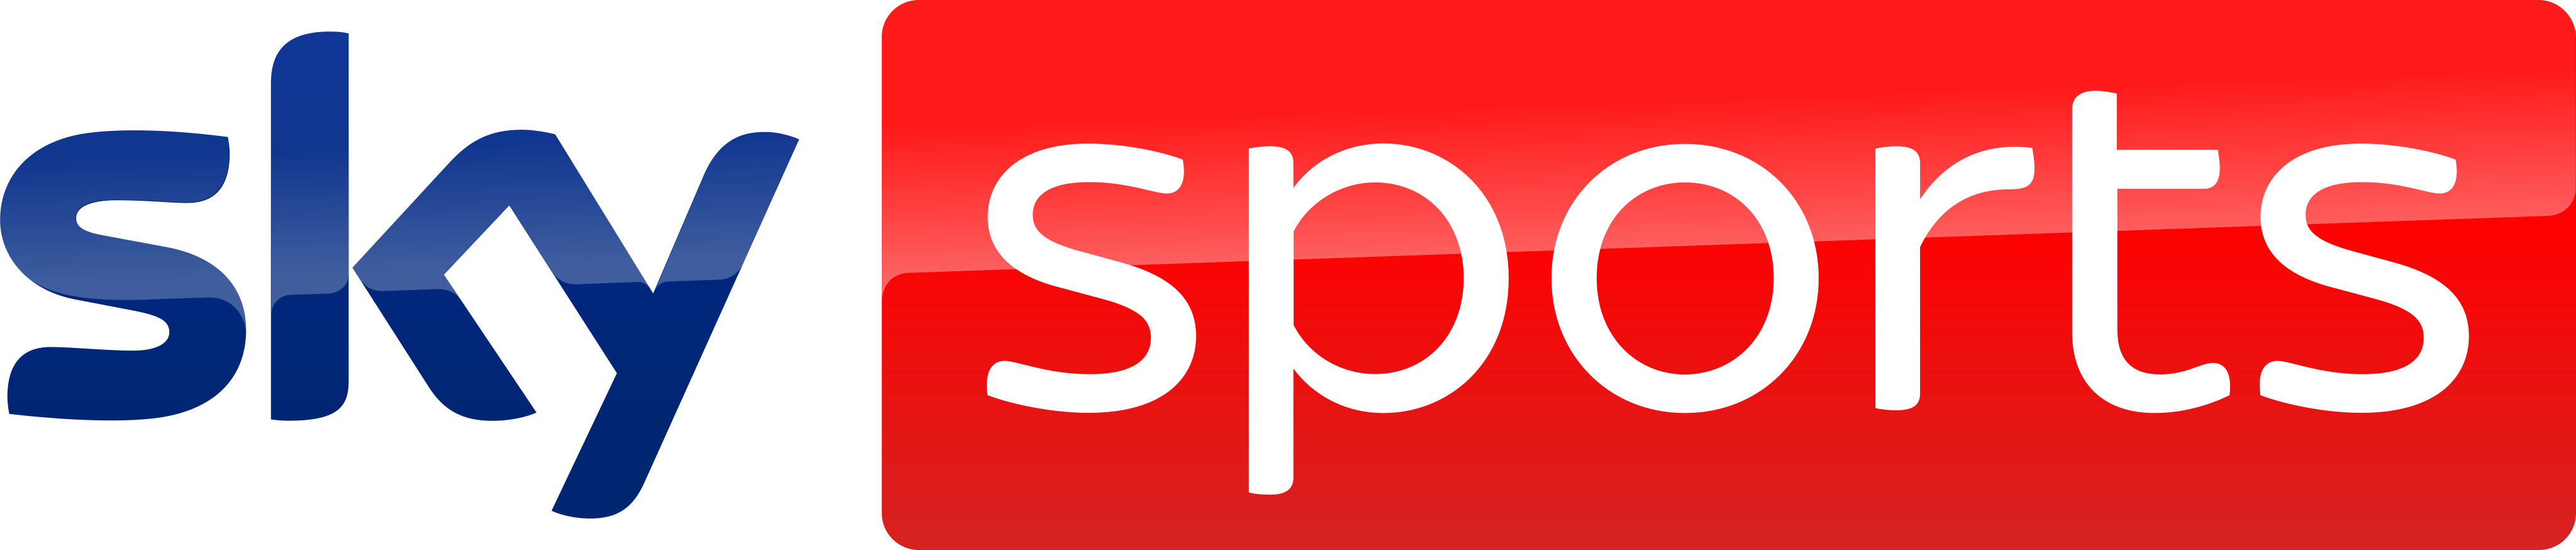 Sky Sports Logo.